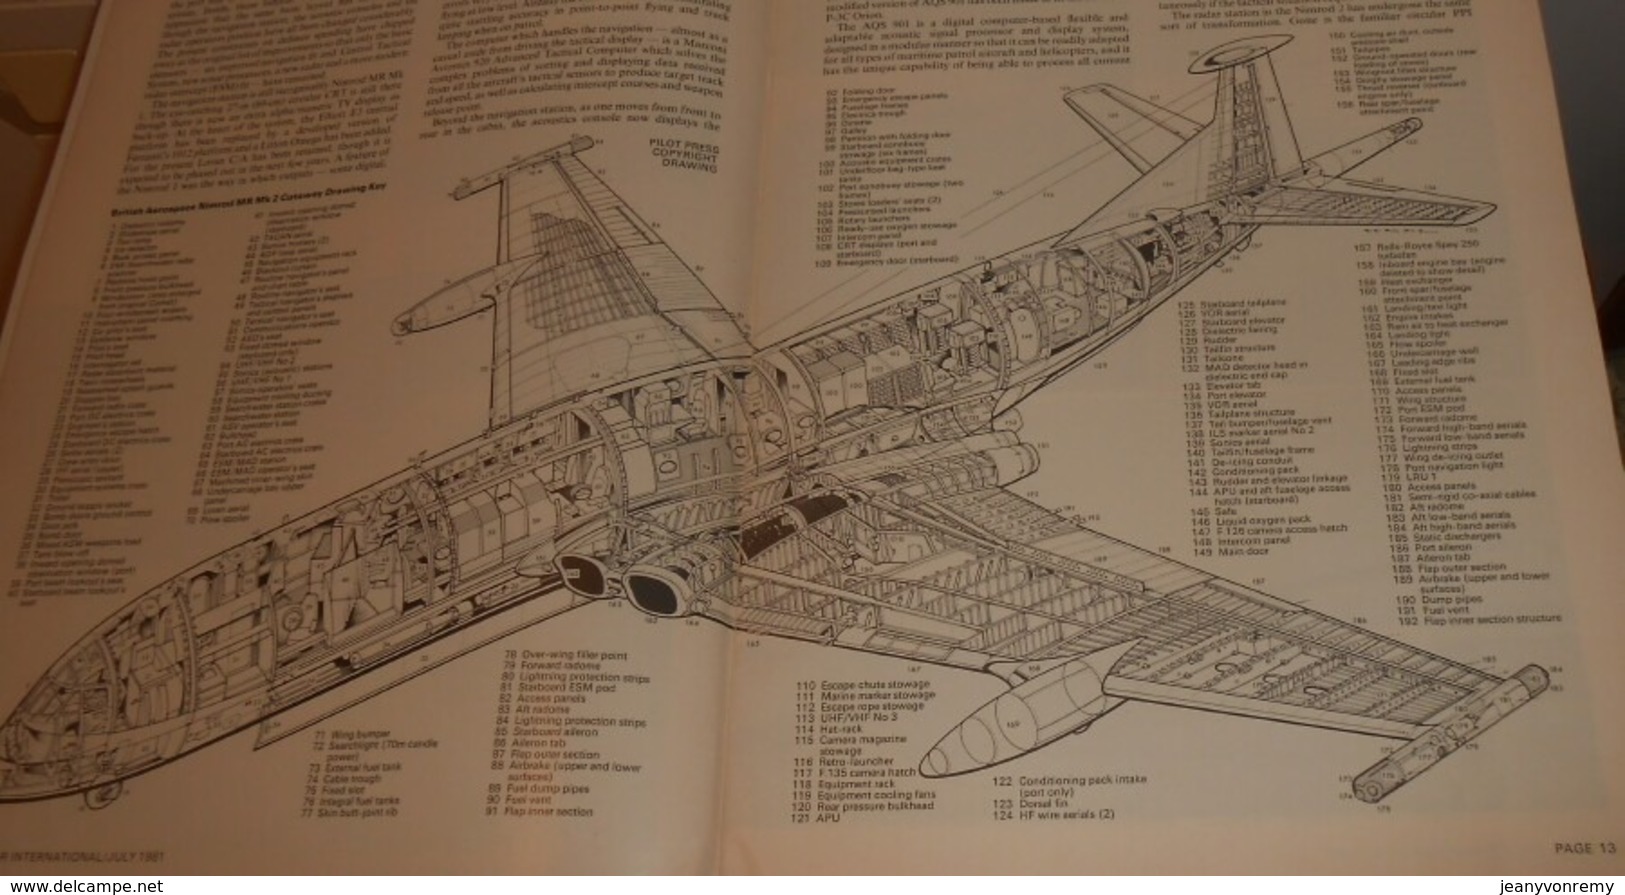 Air International. Volume 21. N°1. Juillet 1981. - Verkehr